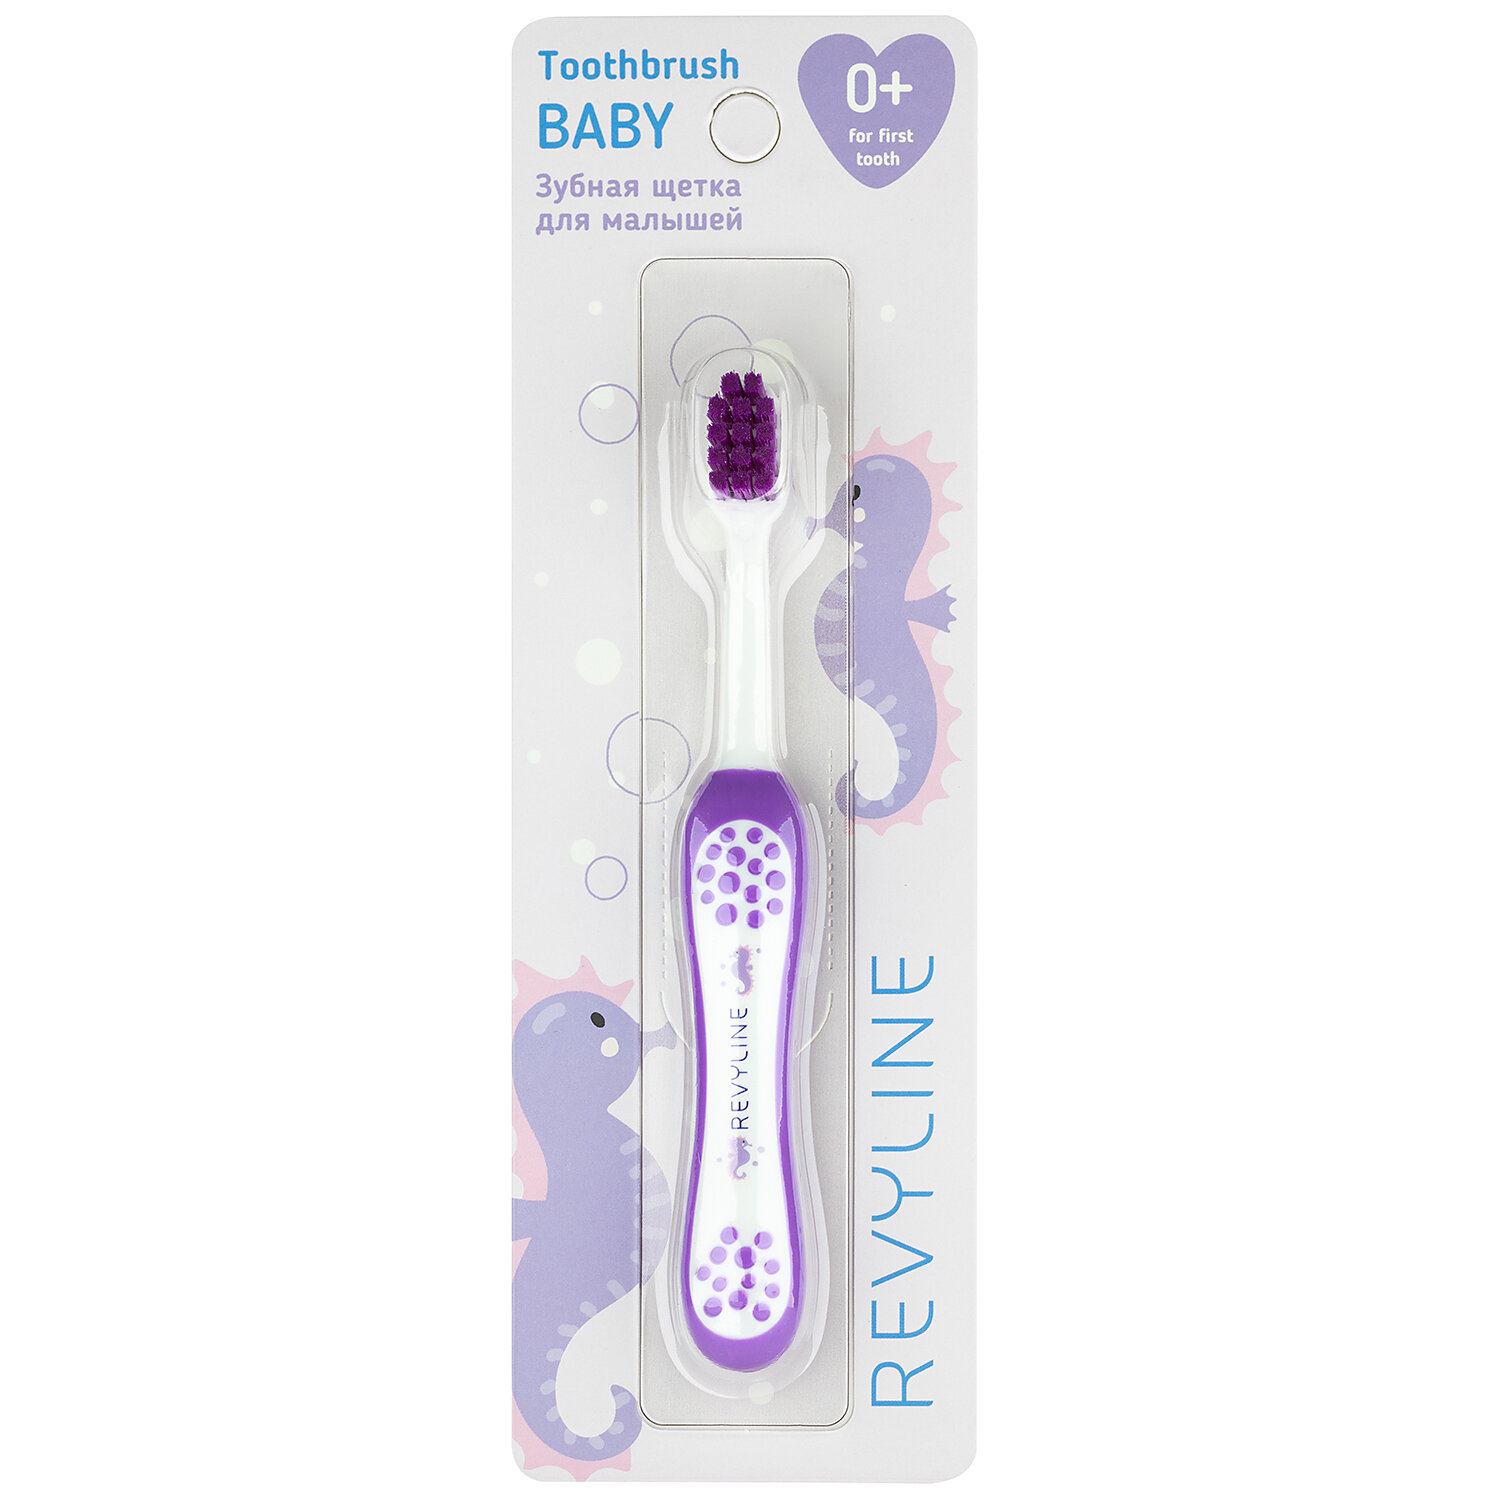 Зубная щетка Revyline детская, Baby S3900, фиолетовая, от 0 до 3 лет, мягкая